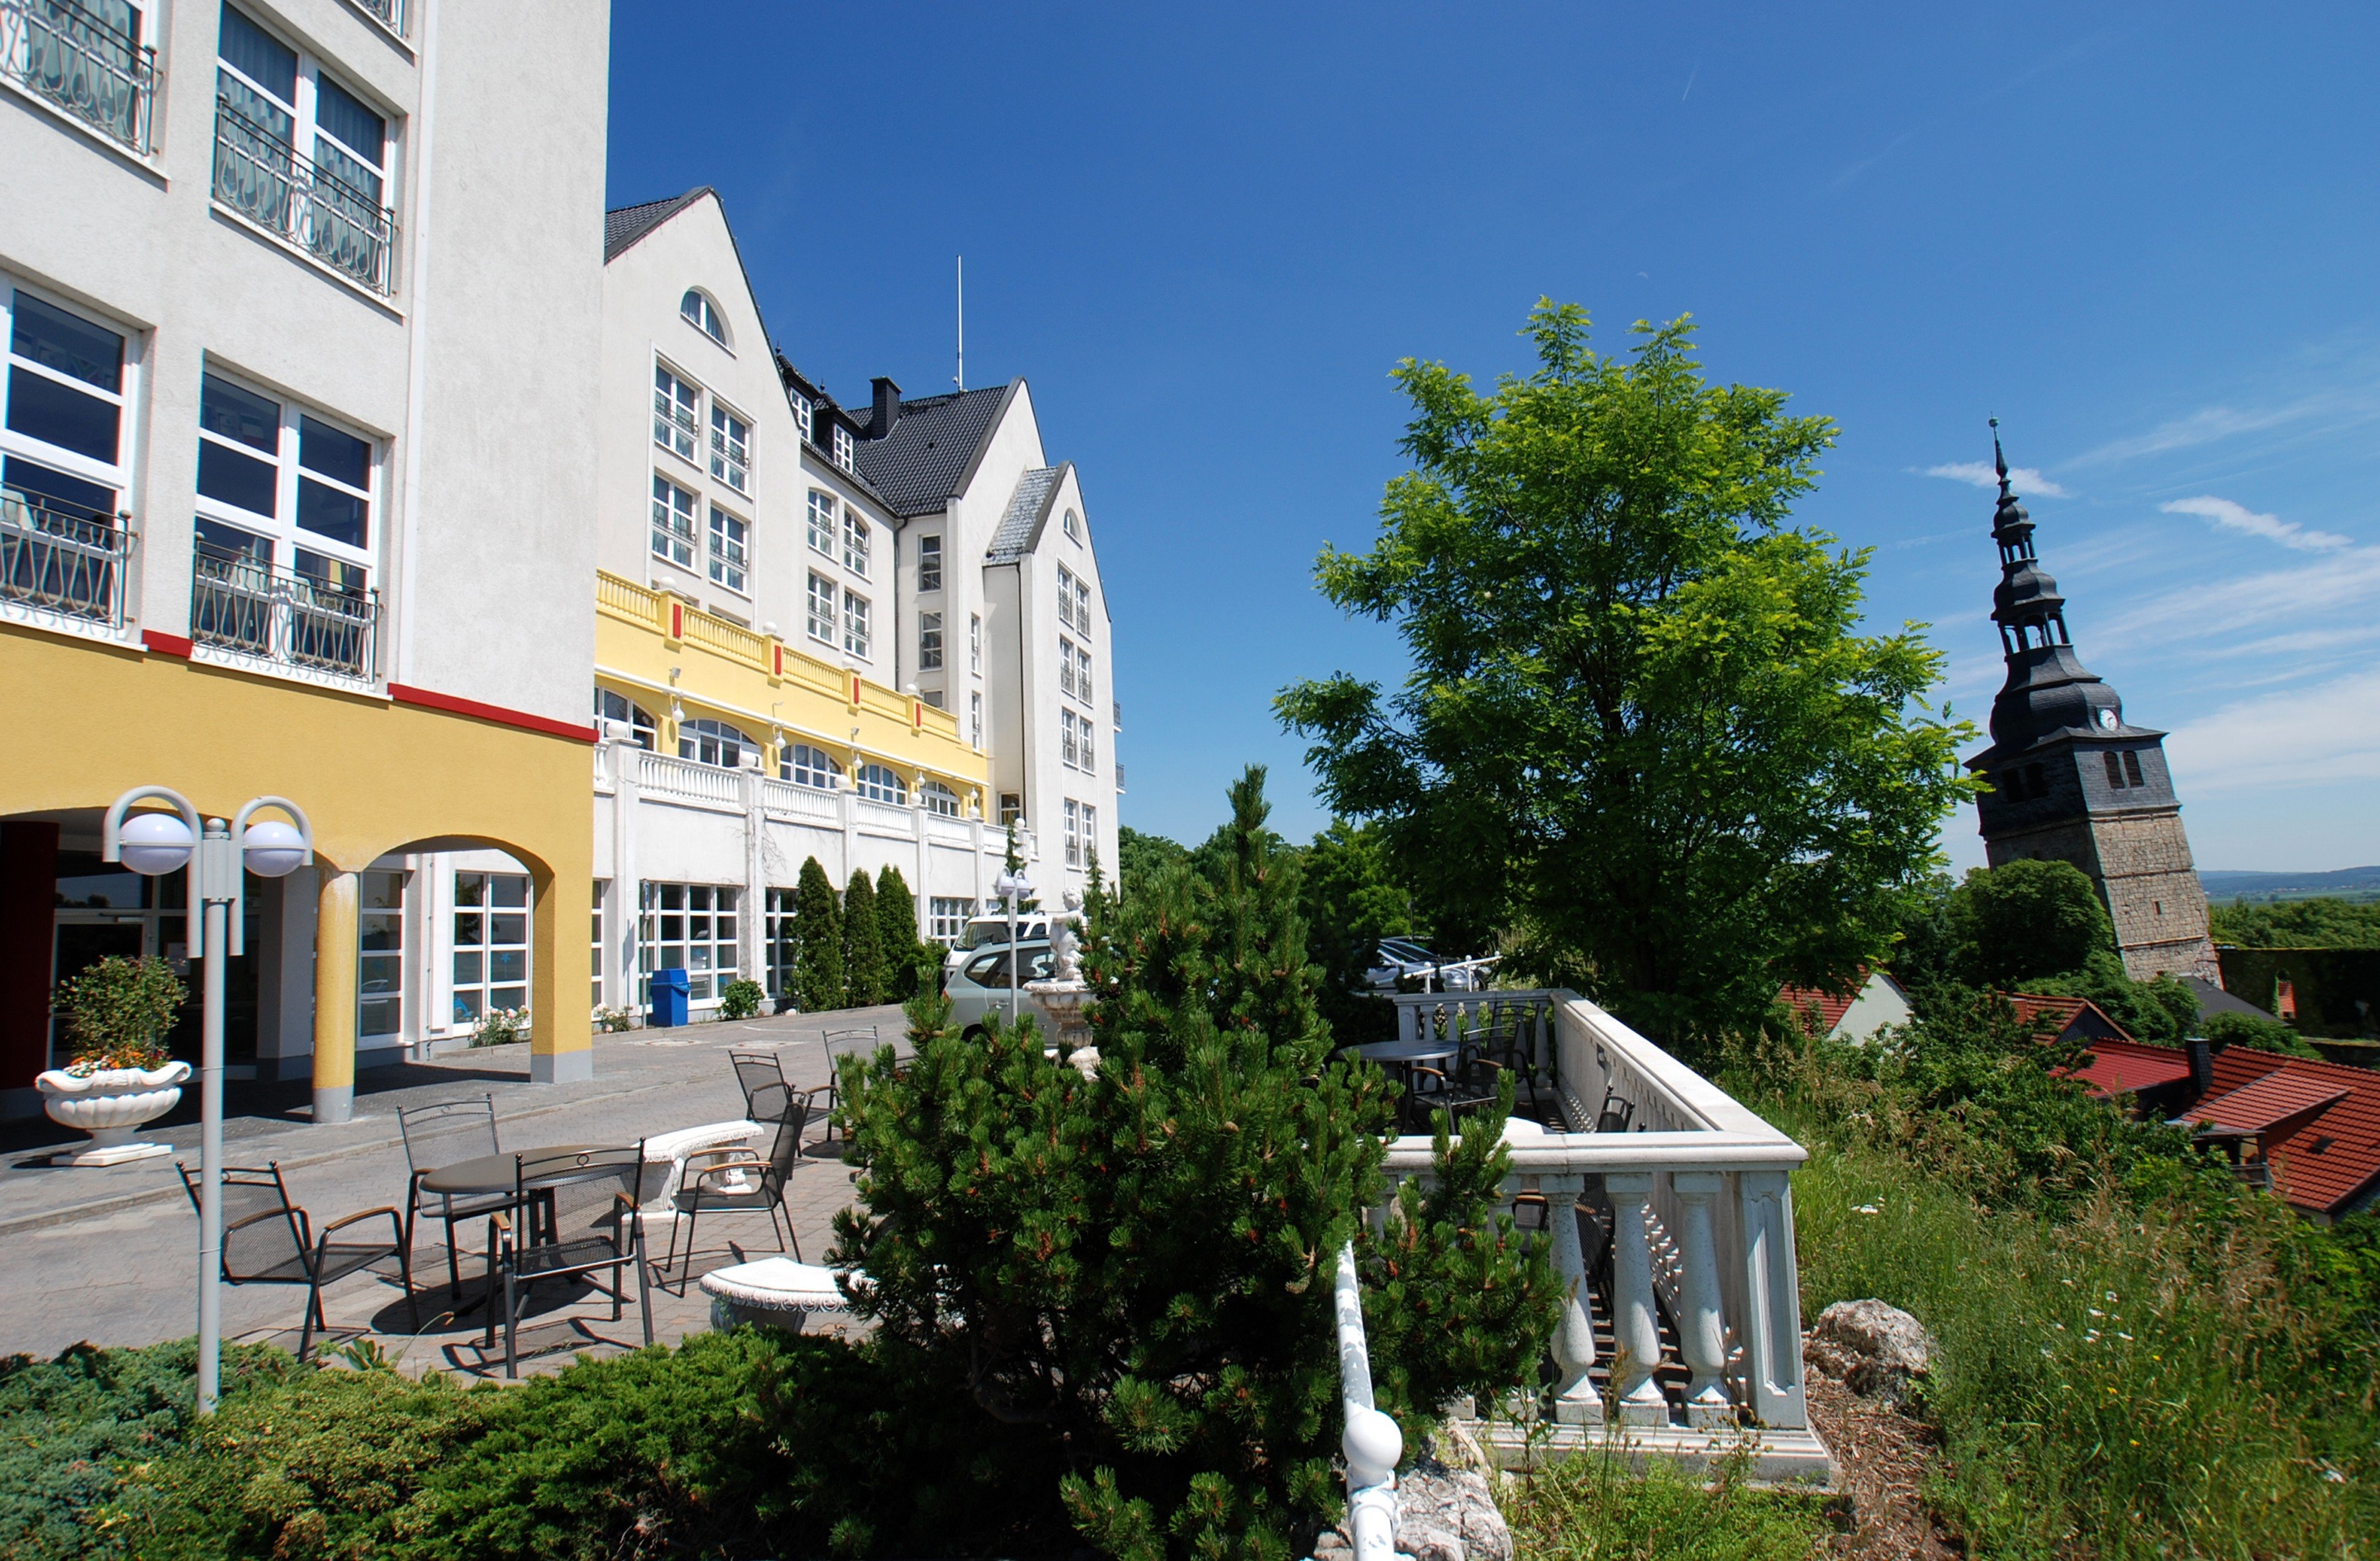 4 Tage Kyffhäuser – Auf den Spuren von Barbarossa – Wellness-Hotel Residenz (4 Sterne) in Bad Frankenhausen, Thüringen inkl. Halbpension